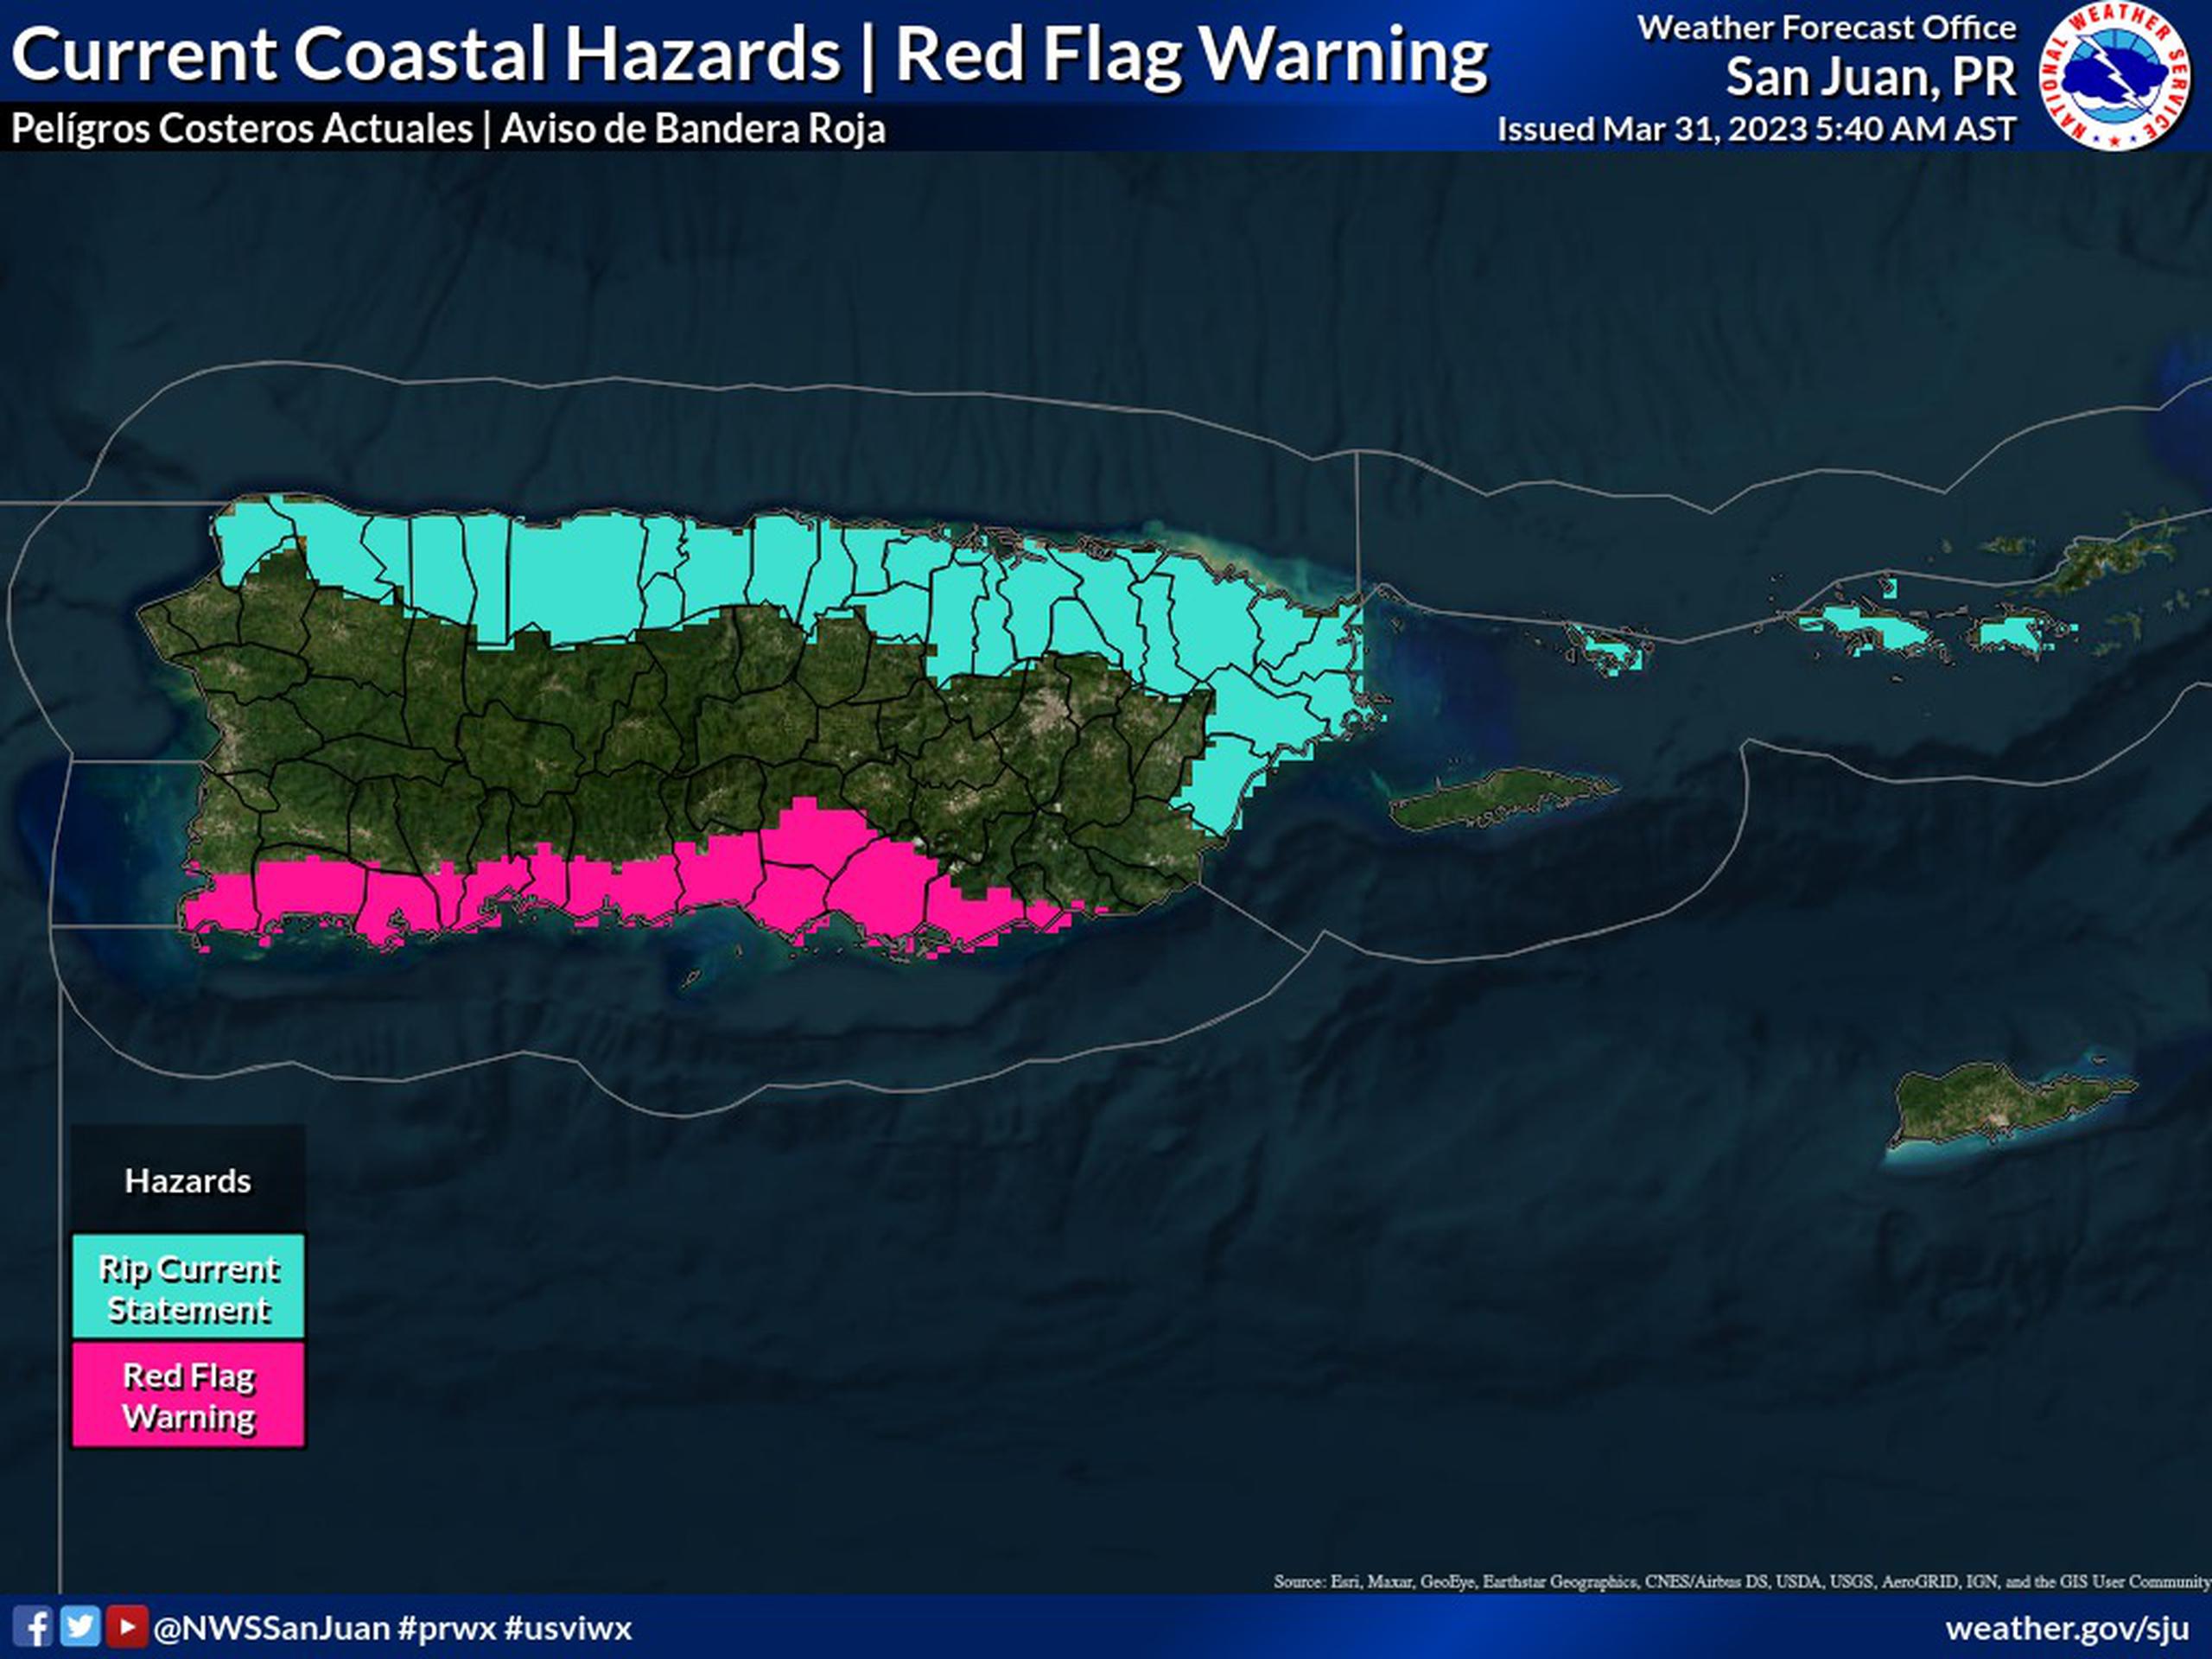 Un aviso de bandera roja se emitió para todas las planicies del sur de Puerto Rico este viernes 23 de marzo.